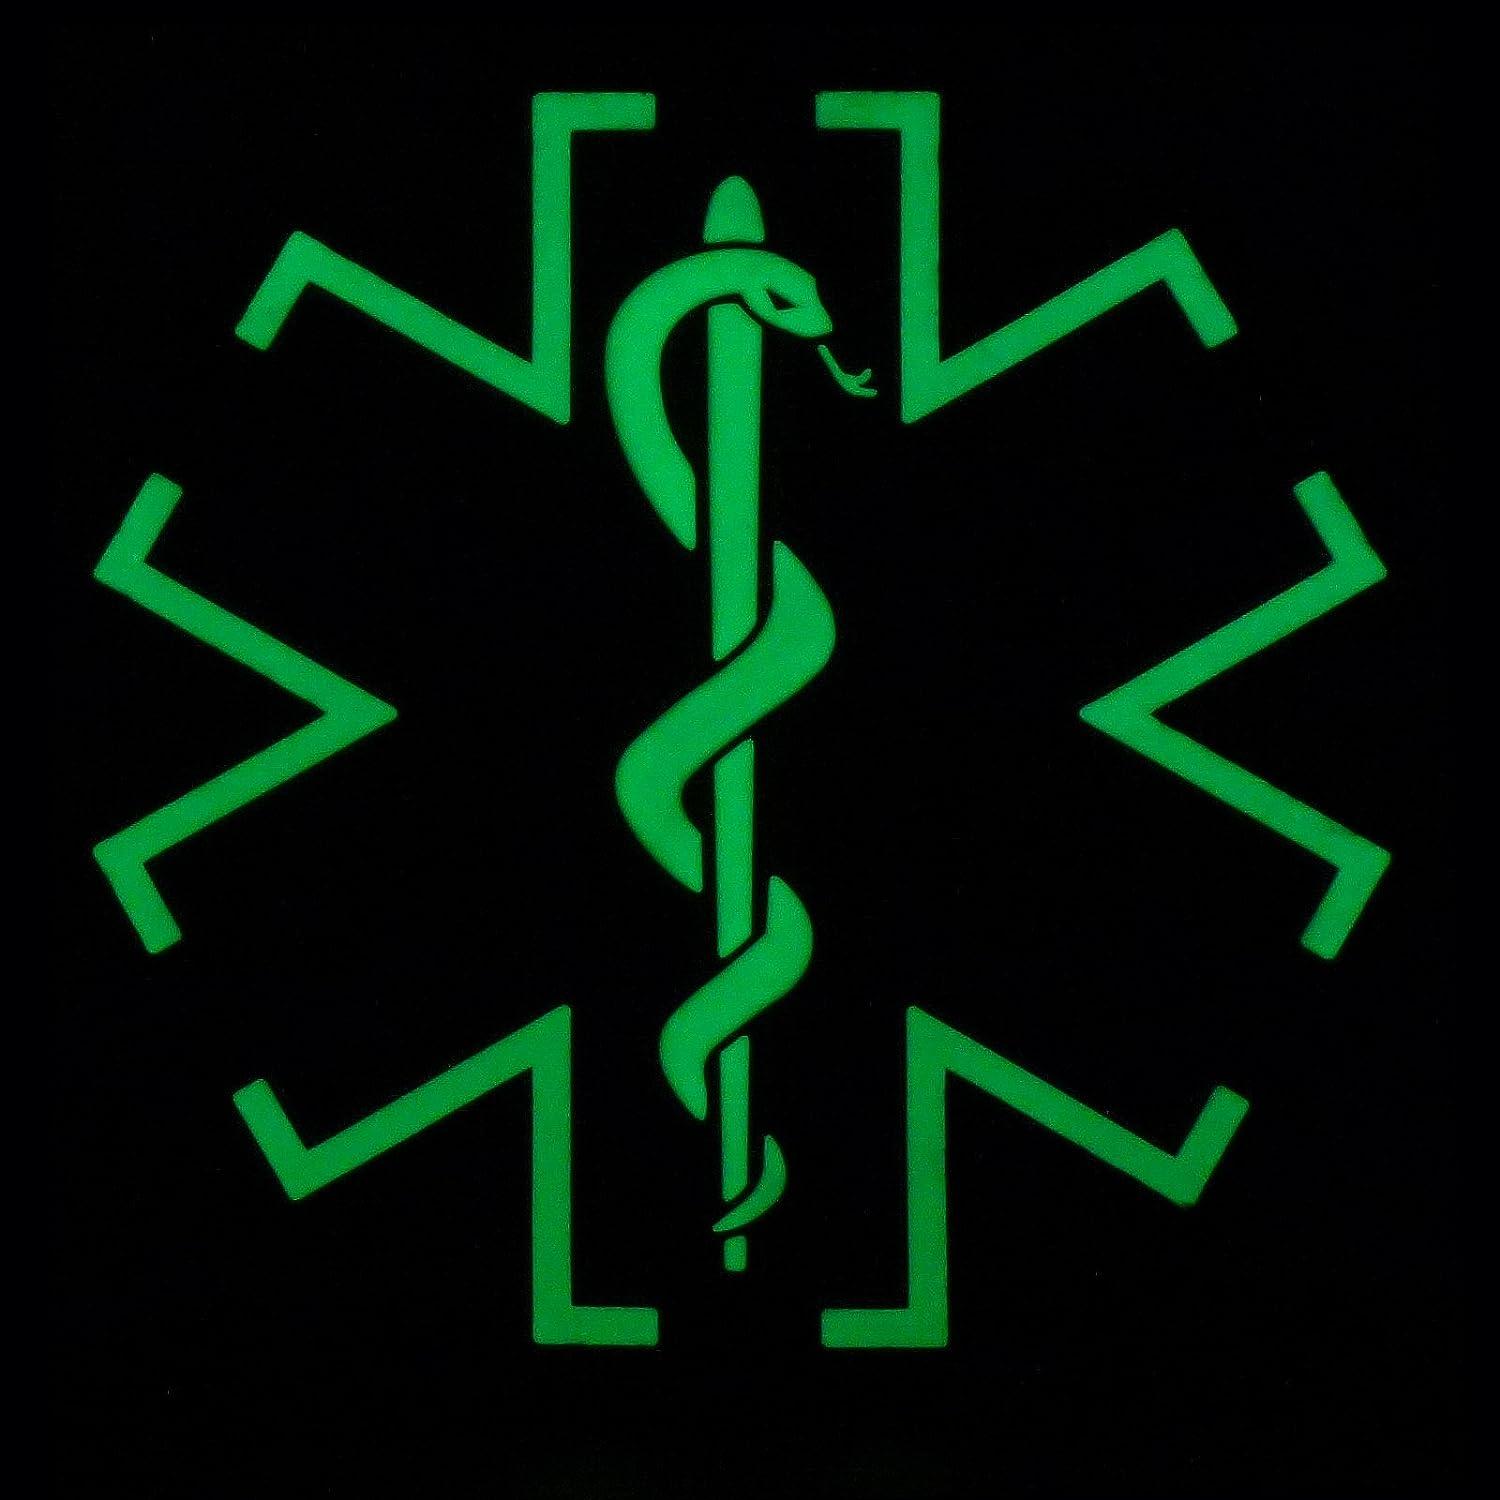 Tactical paramedic / EMT Caduceus PVC Patch (choose Color) hook